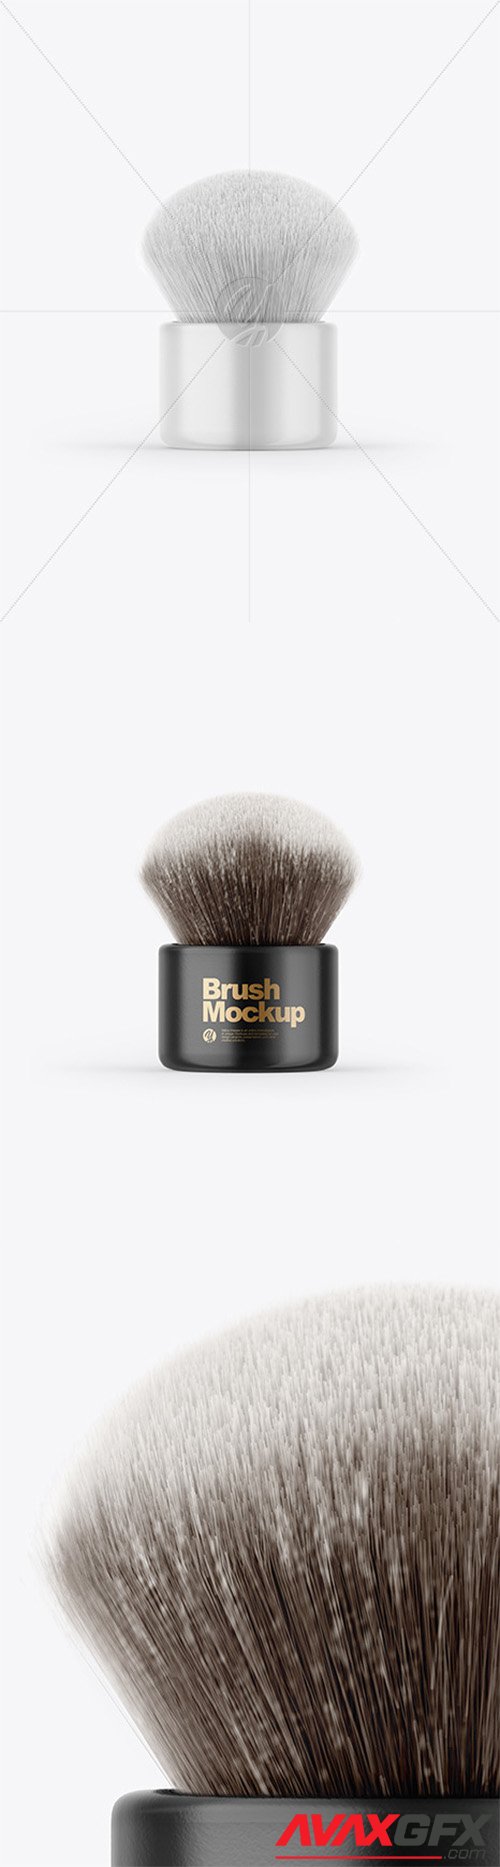 Glossy Powder Brush Mockup 64315